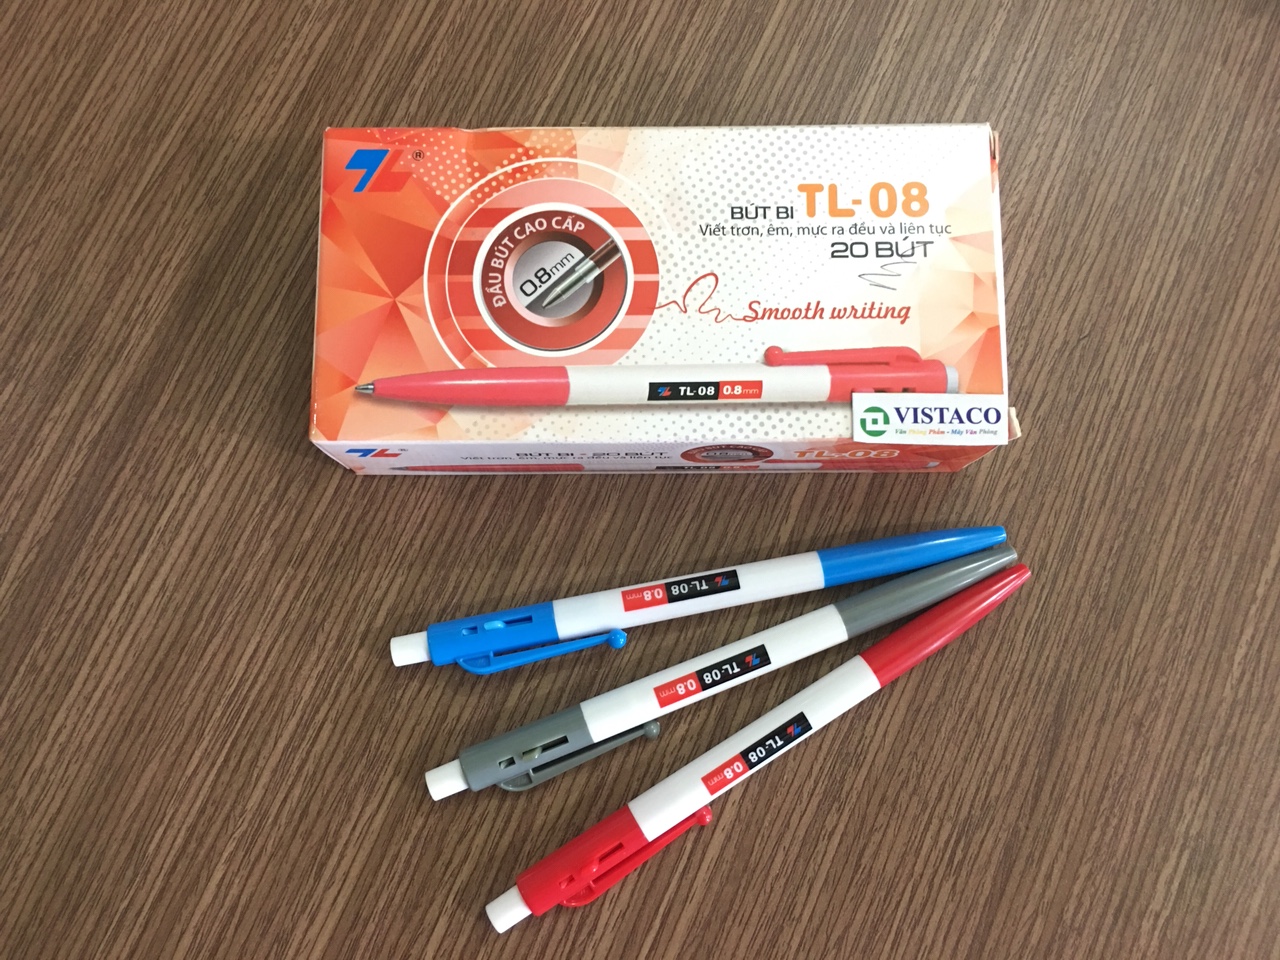 Bút bi TL08 đỏ Thiên Long